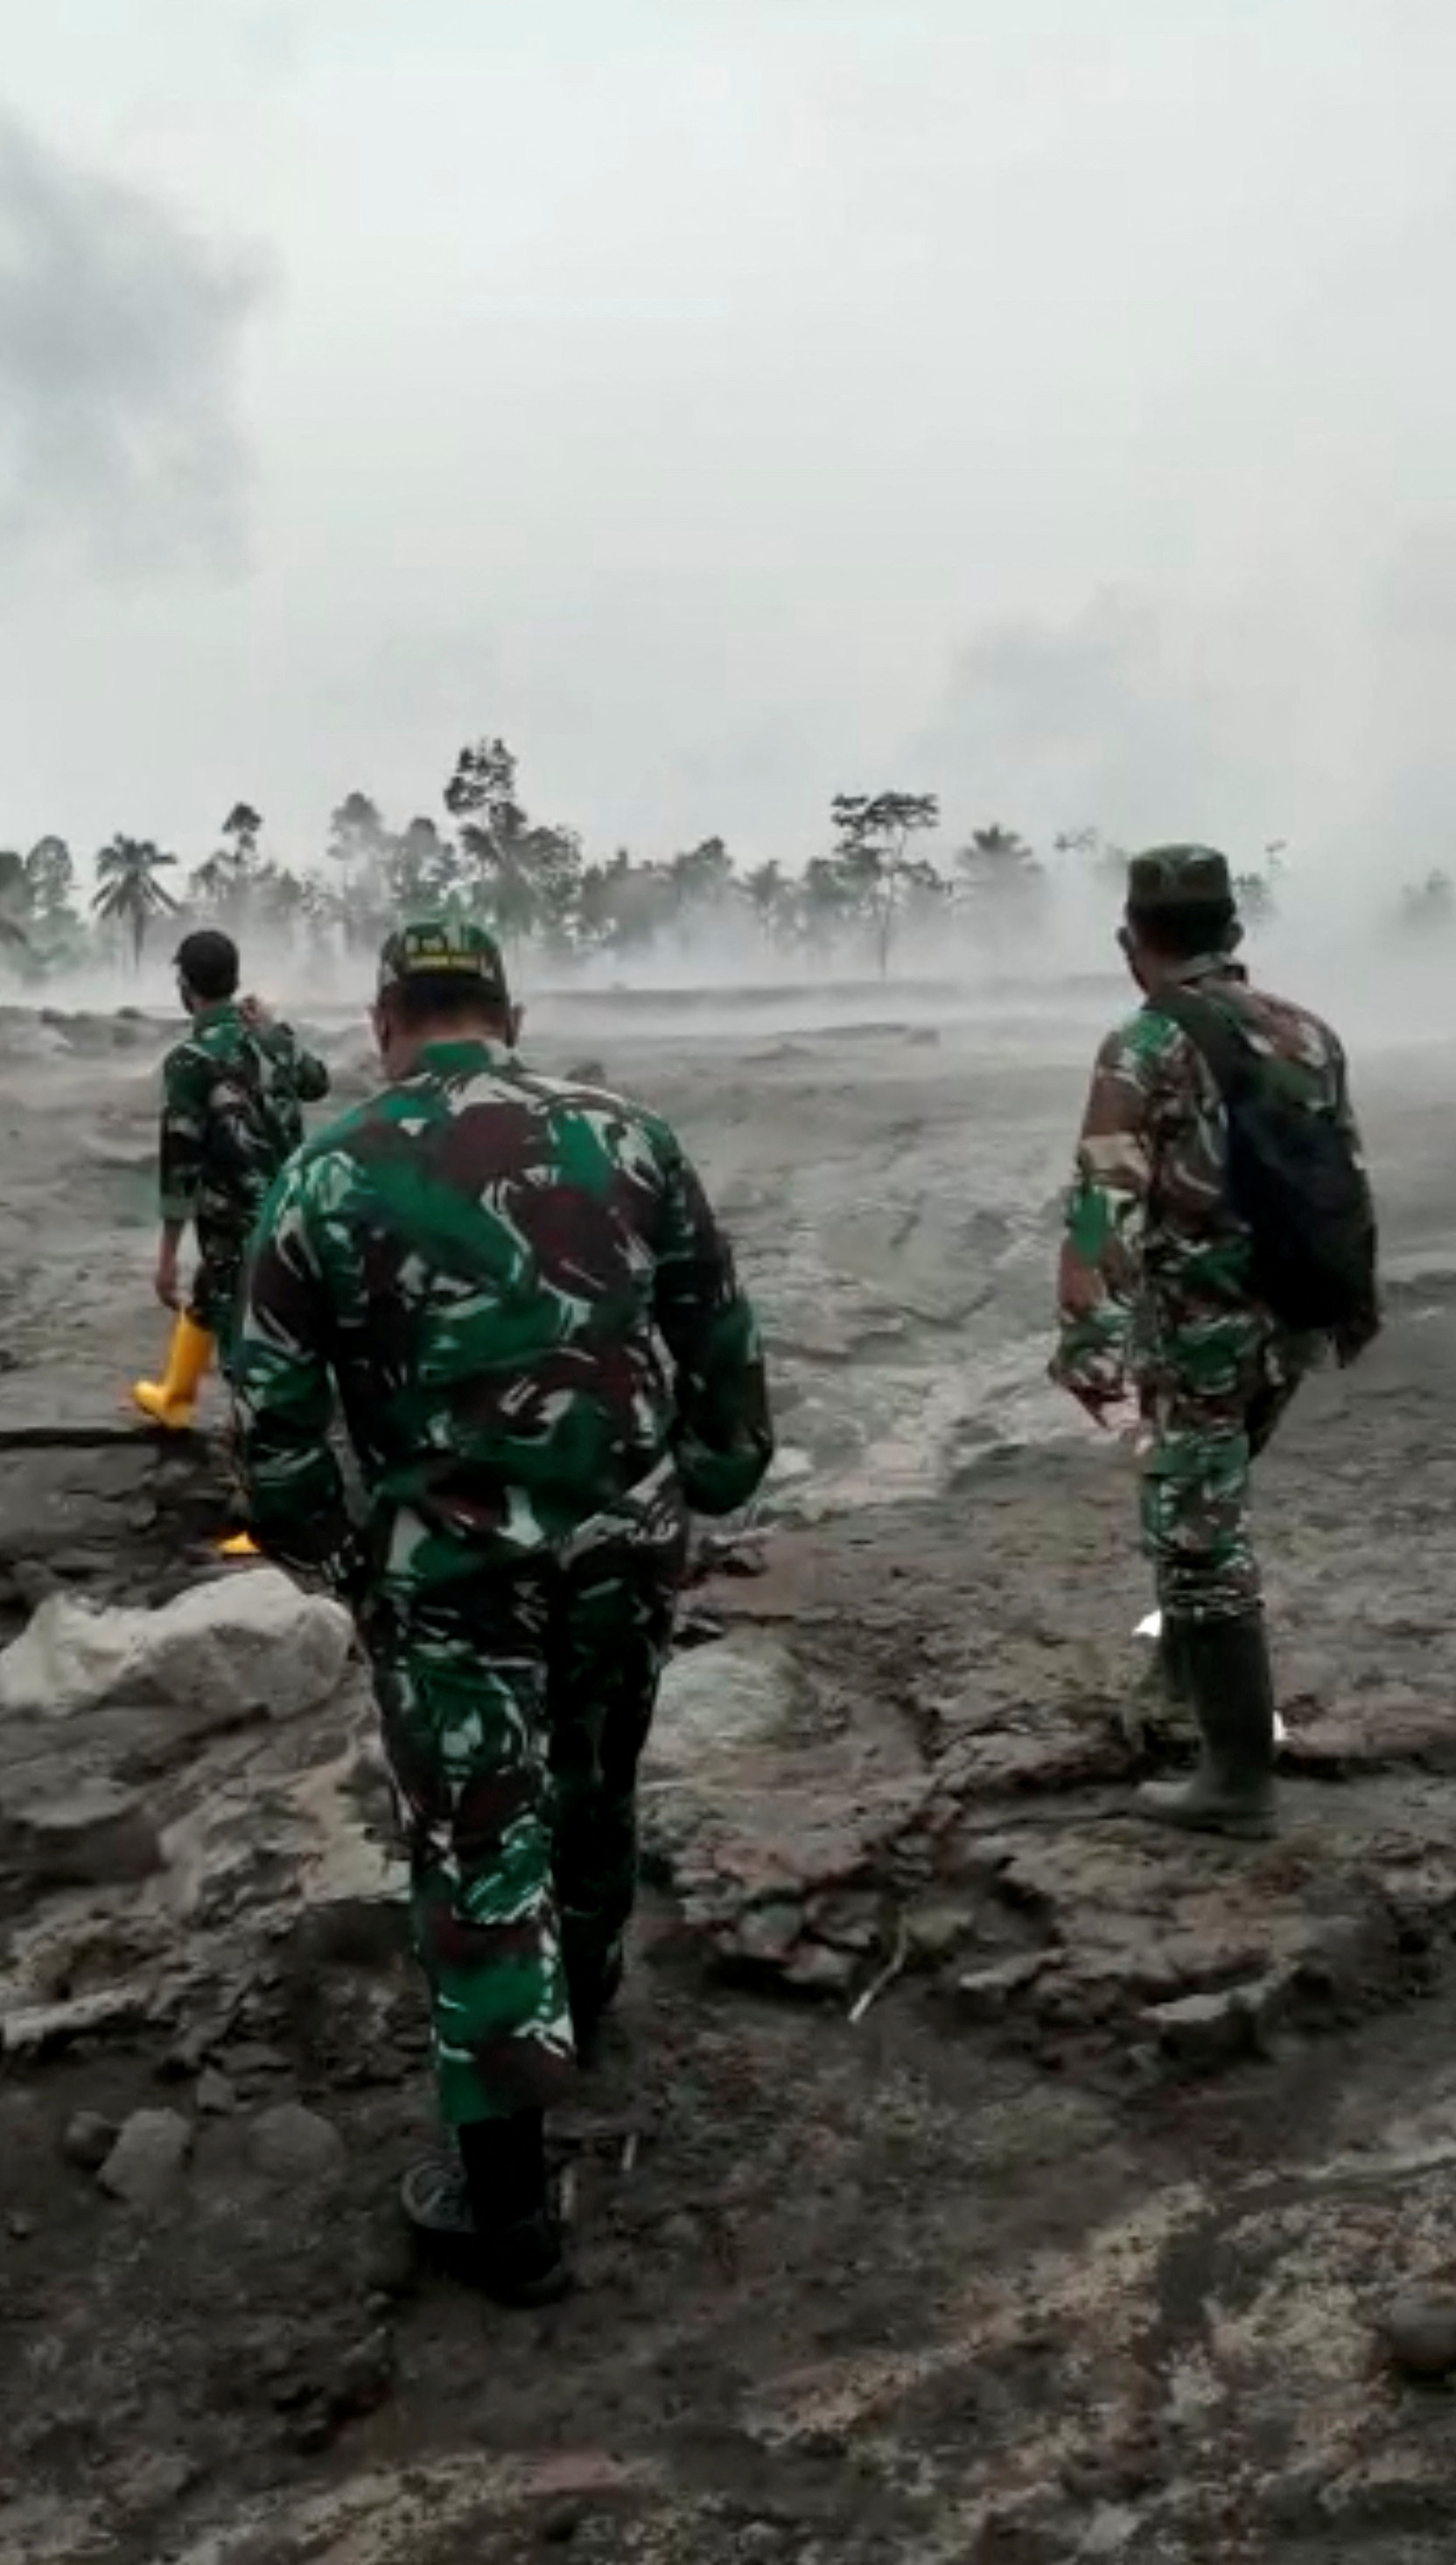 Miembros del ejército caminan sobre suelo cubierto de cenizas después de una erupción del volcán. Dodik Suryadiawan vía REUTERS 